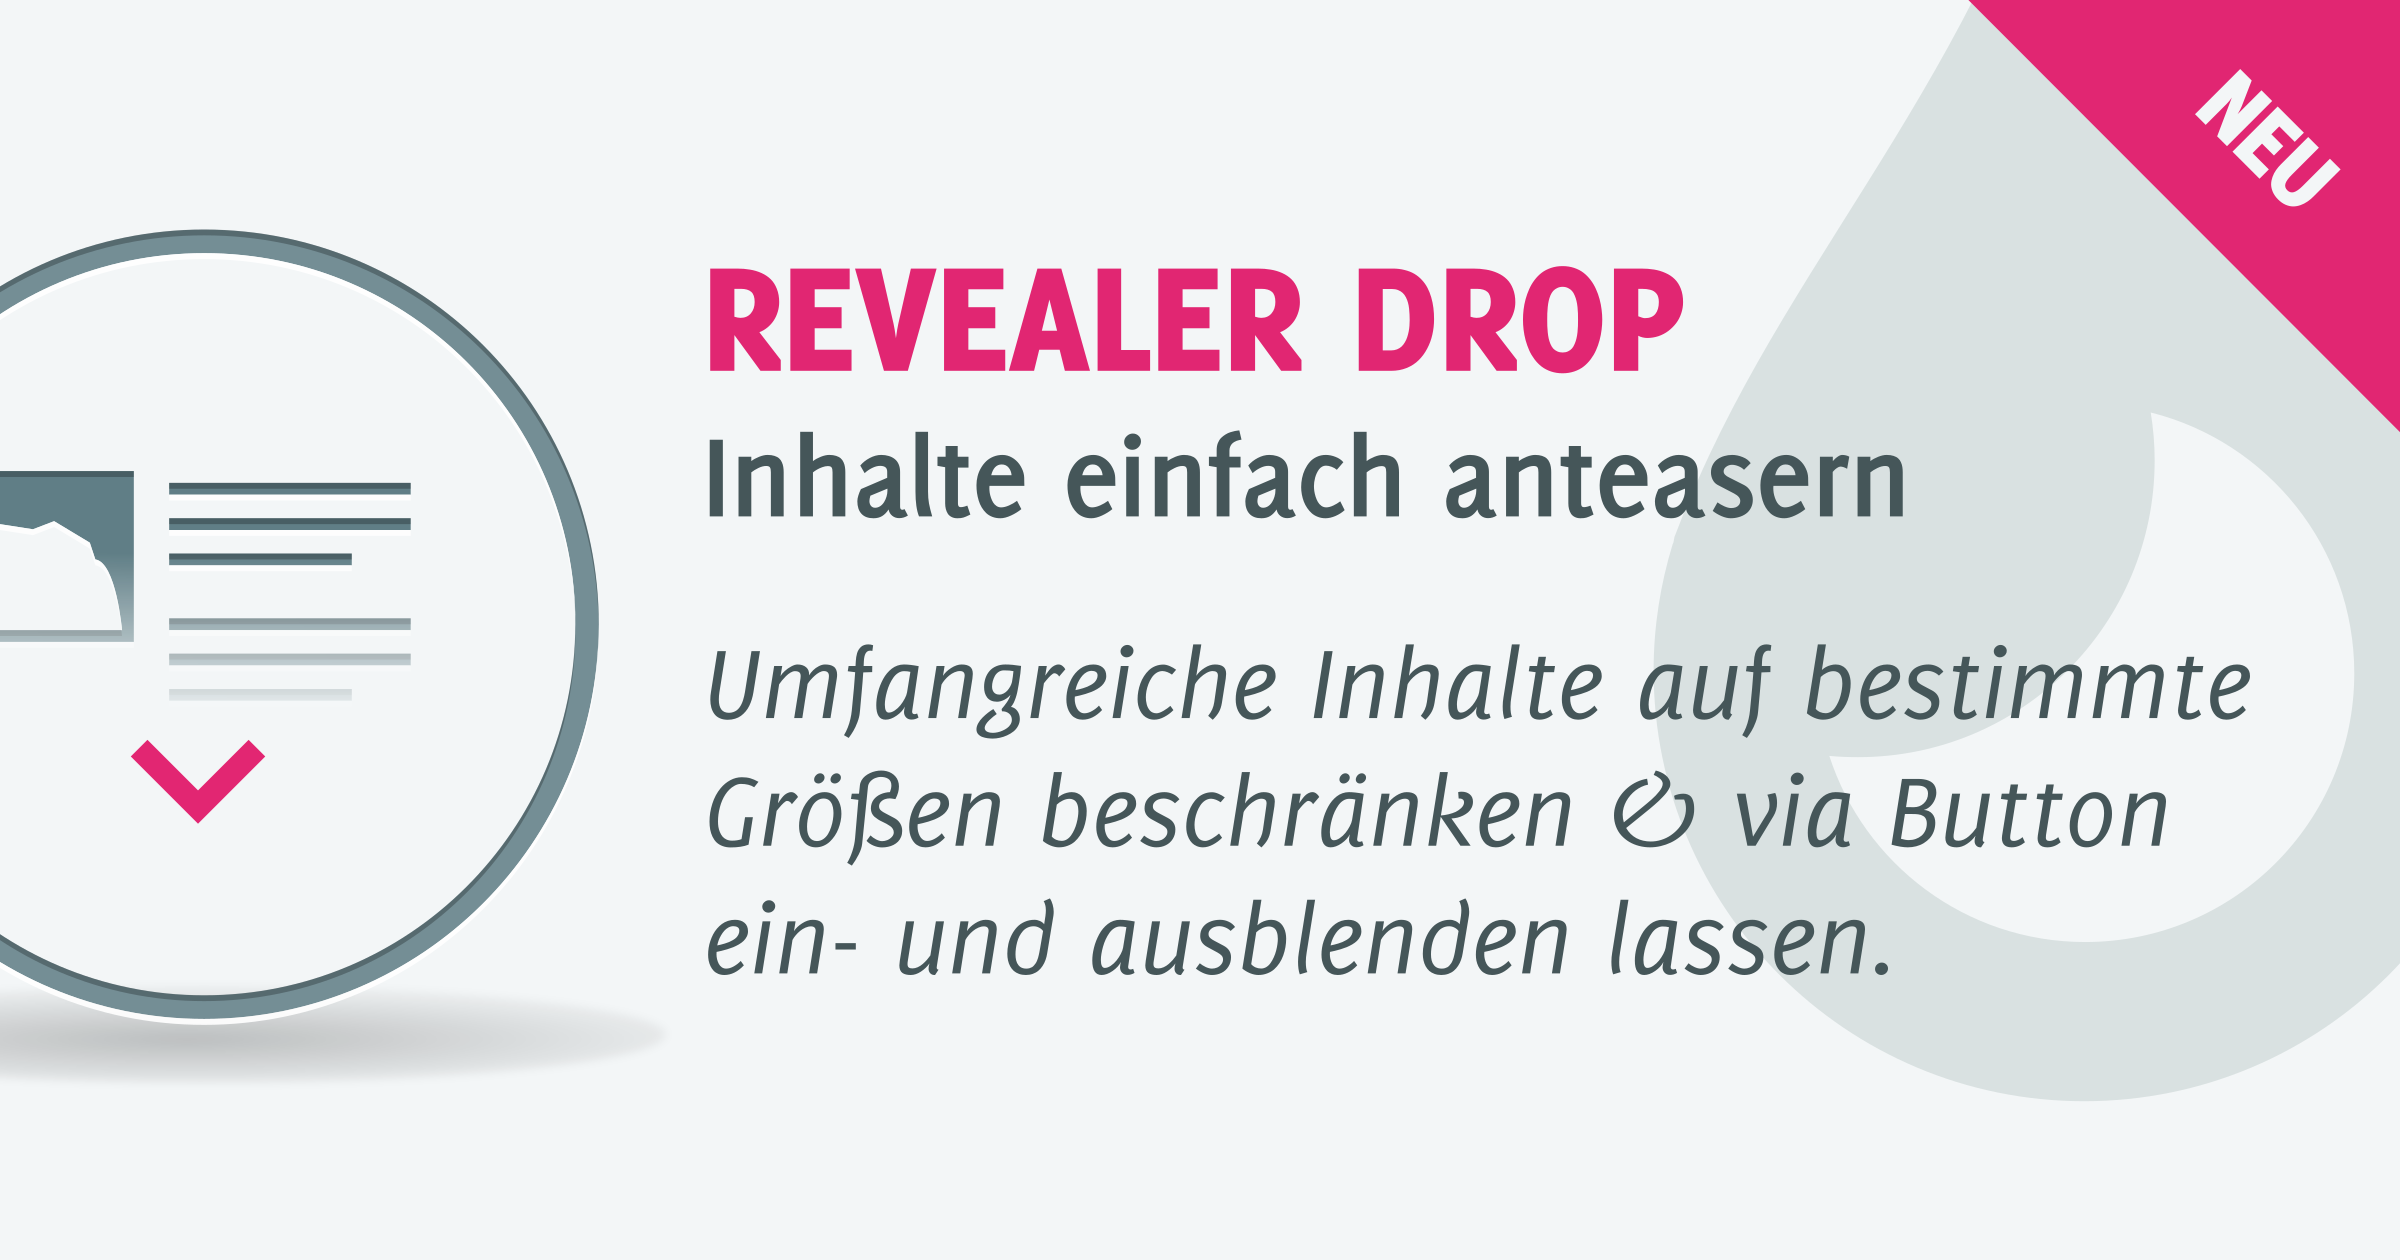 Drop Release: Revealer